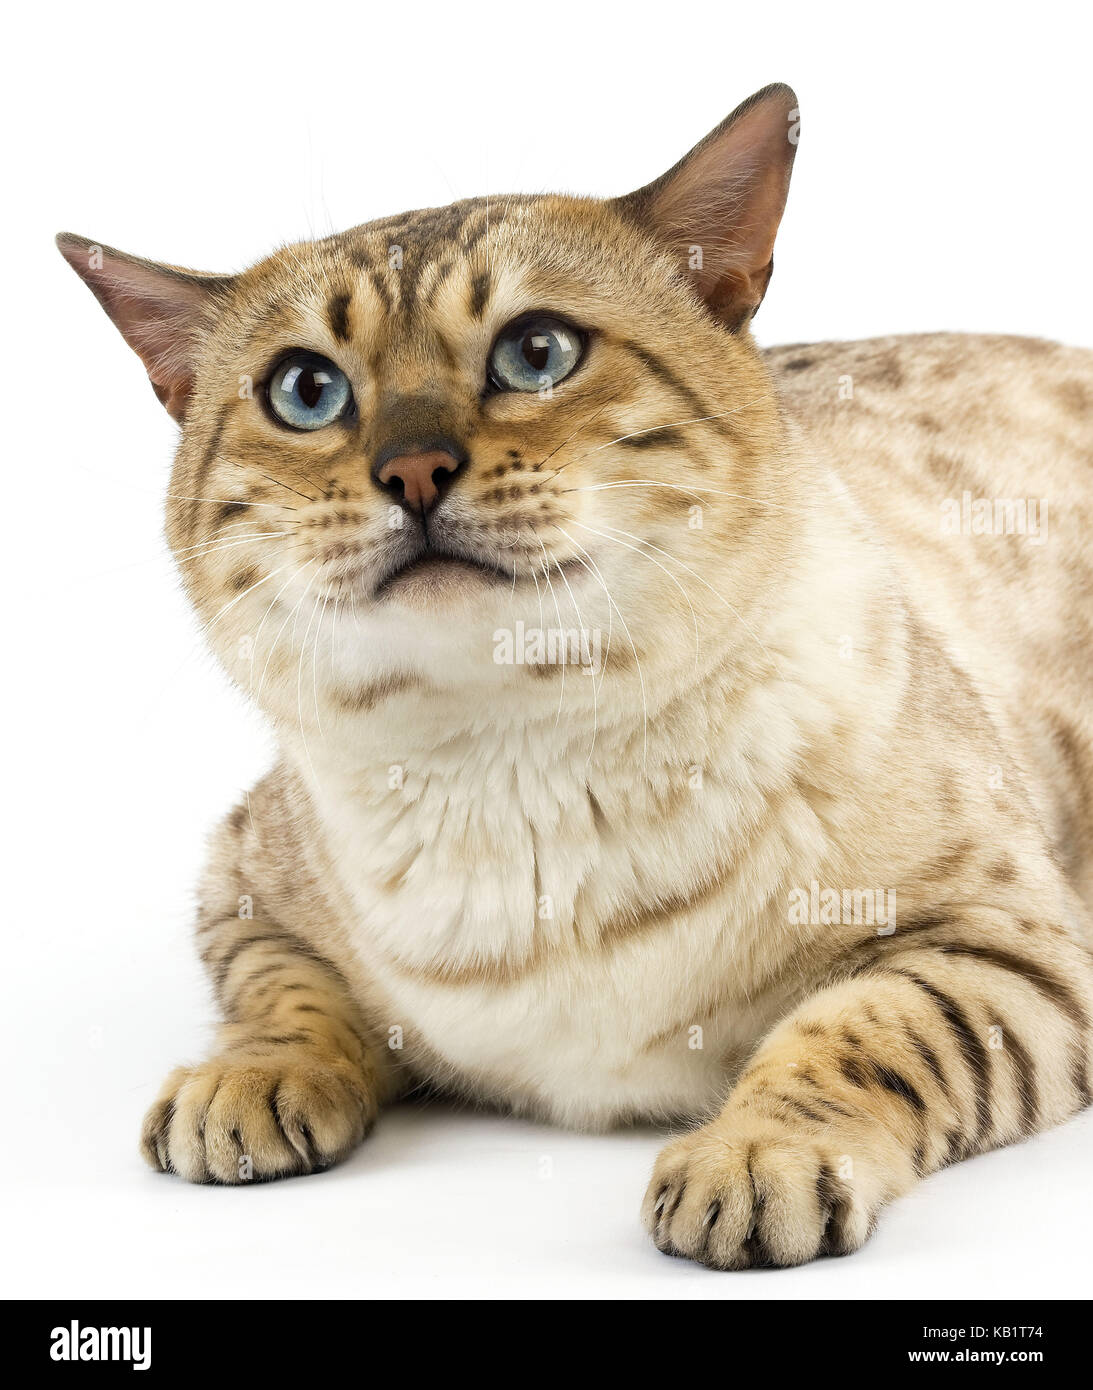 Seal Mink Bengala gato con los ojos azules, fondo blanco, mintiendo, Foto de estudio, Foto de stock